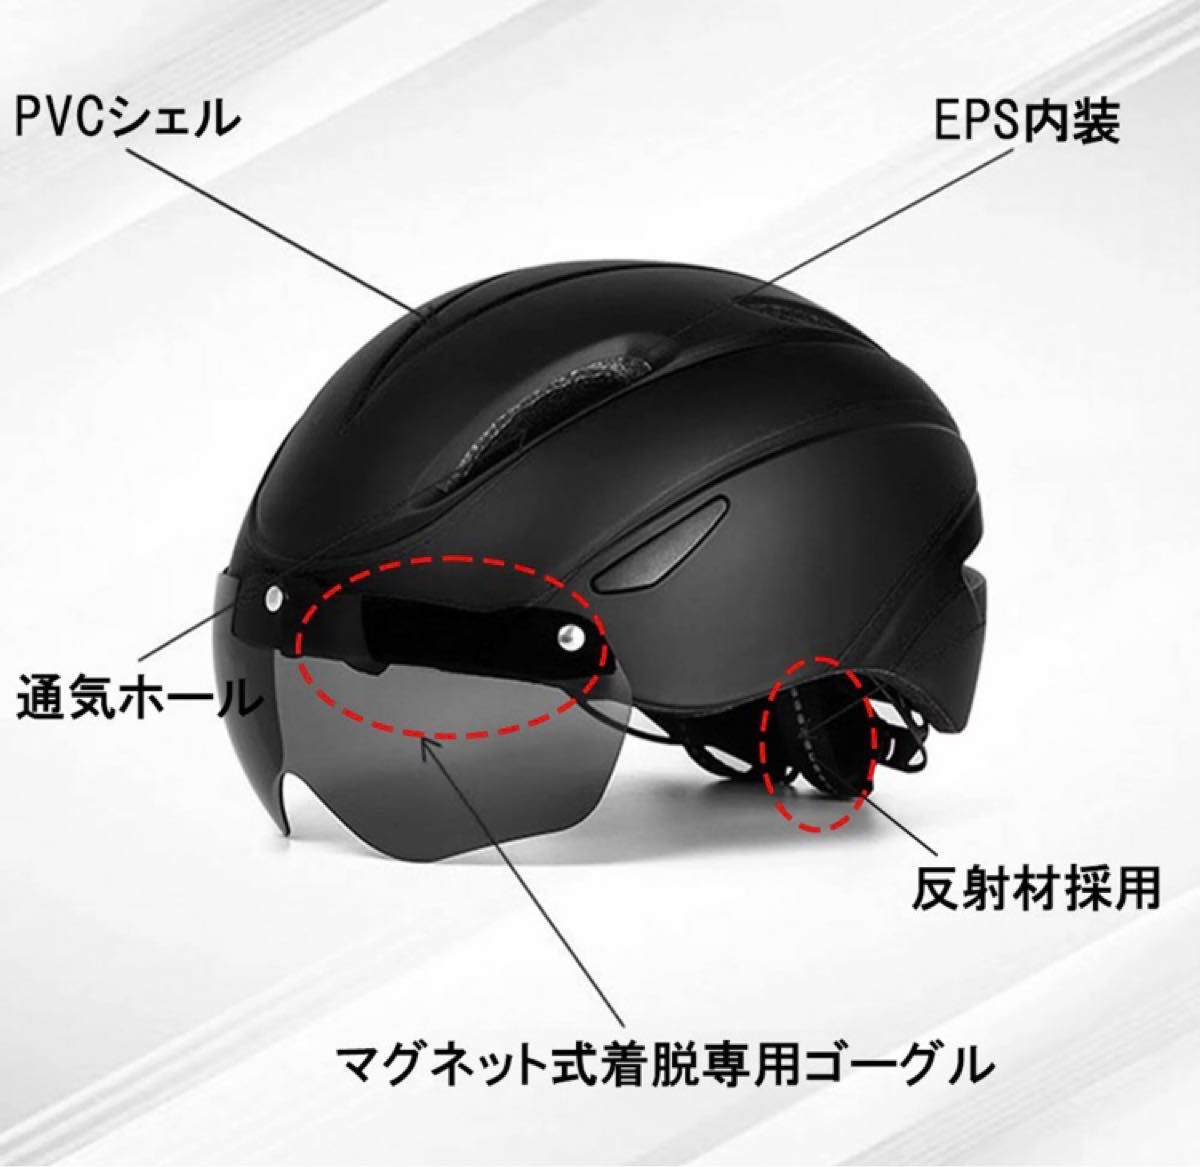 ヘルメット 自転車 ゴーグル付き 流線型 ゴーグル 超軽量 軽い サイズ調整可能 サイクリング ロードバイク 電動自転車 安全認証